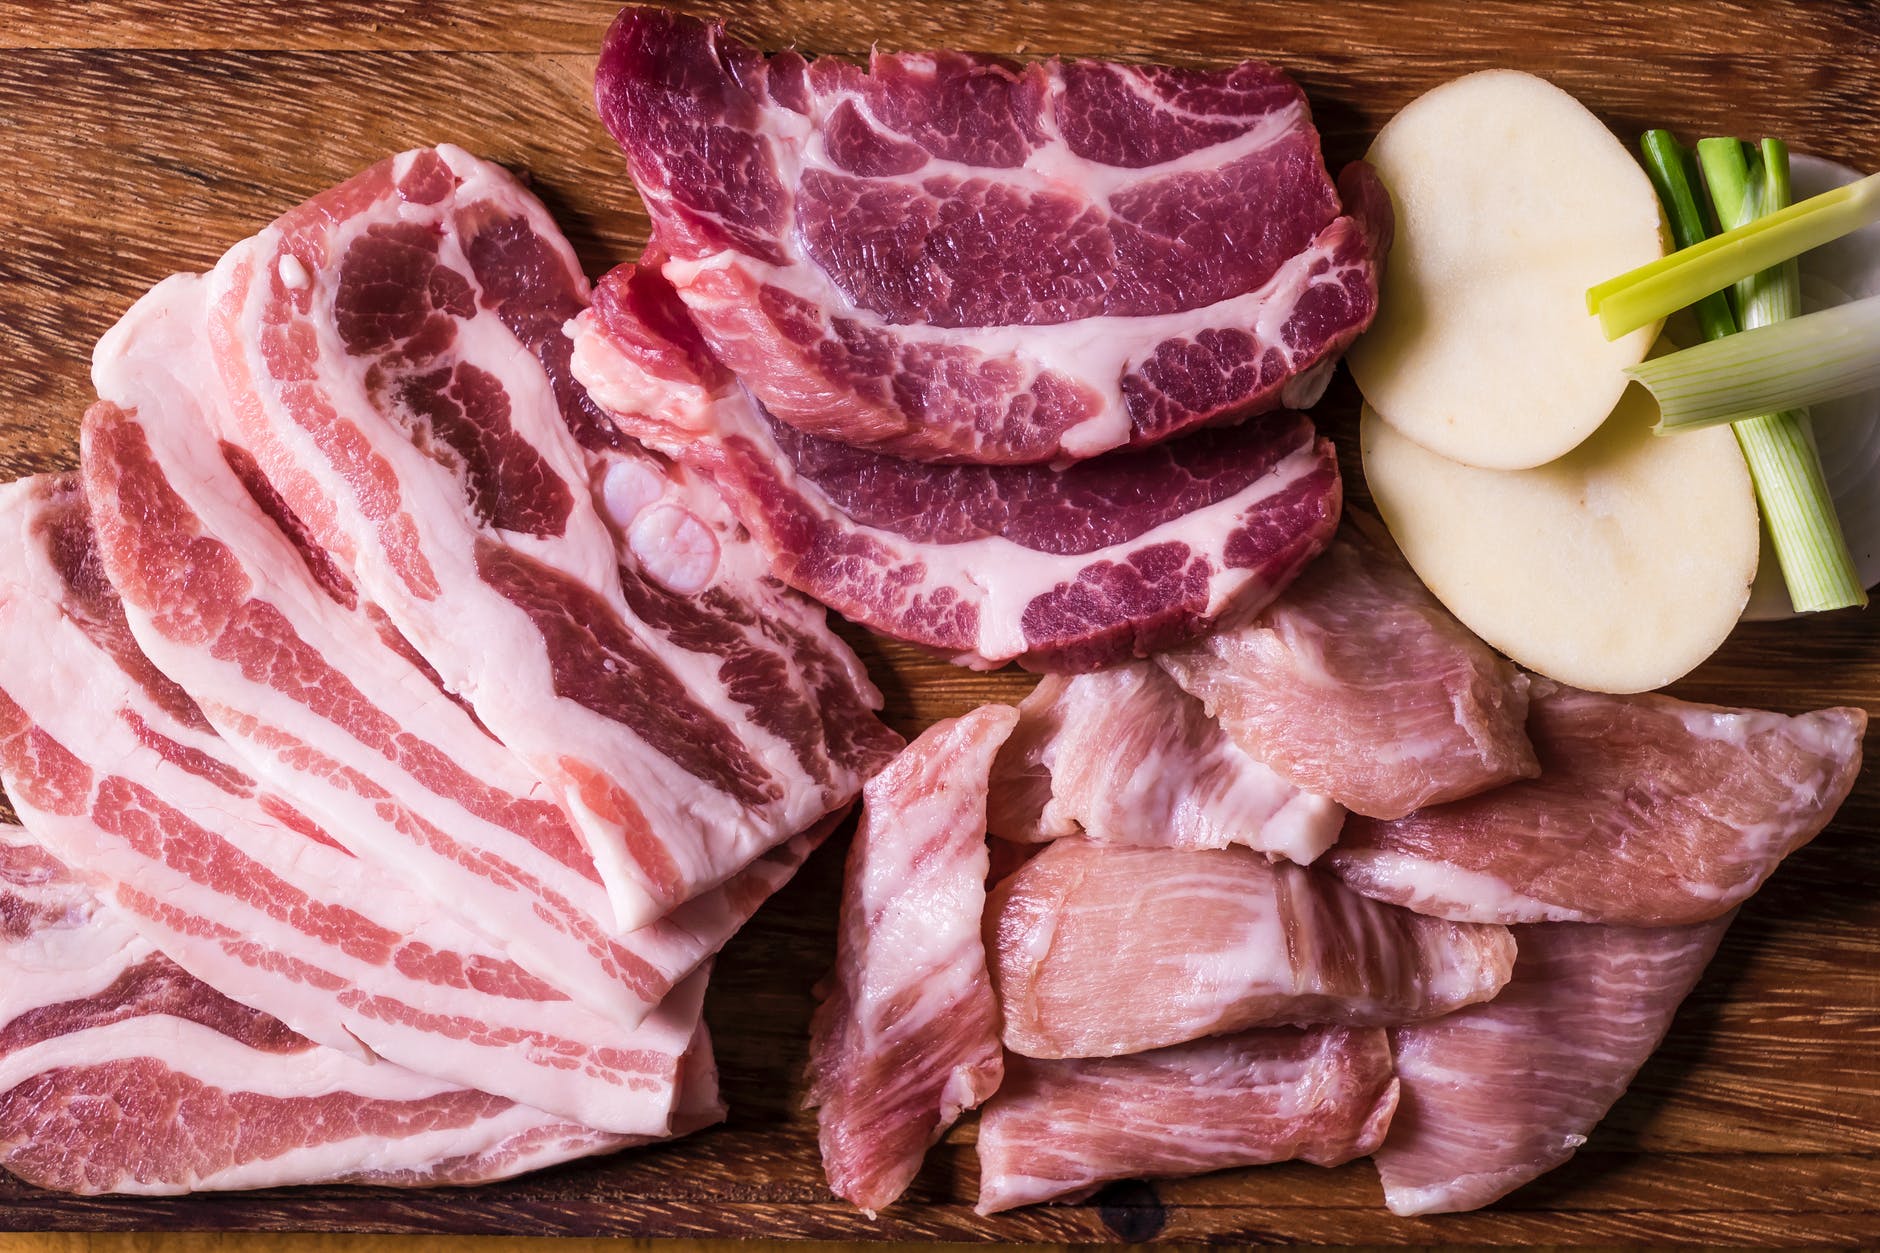 Ngỡ ngàng khi các chuyên gia tiết lộ việc ăn quá nhiều thịt có thể dẫn đến nguy cơ vô sinh ở nam giới - Ảnh 2